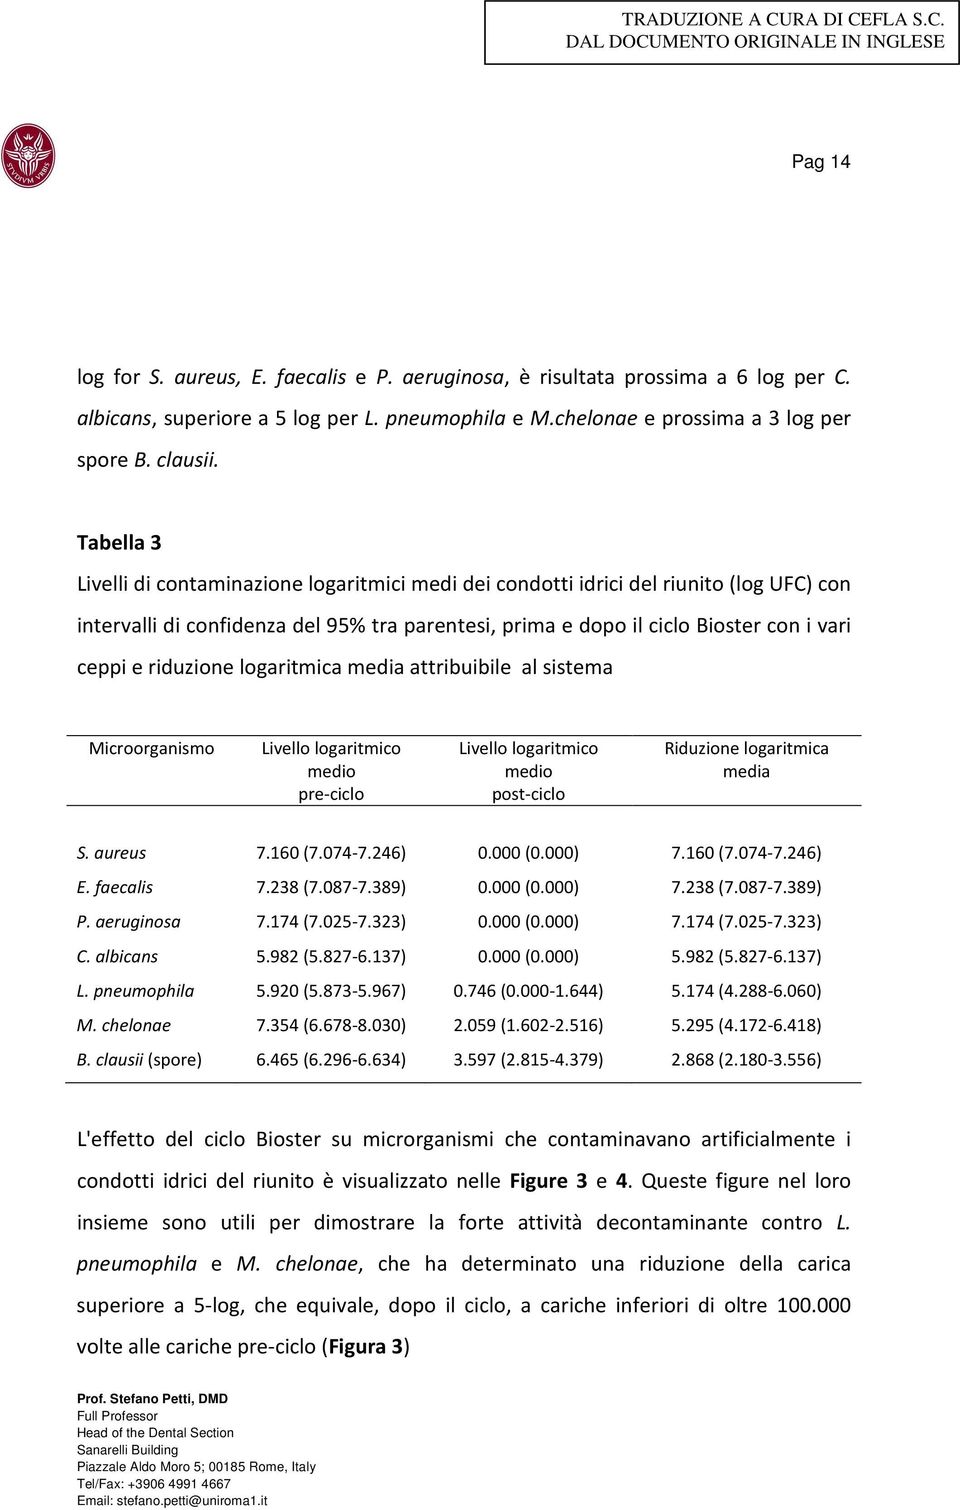 riduzione logaritmica media attribuibile al sistema Microorganismo Livello logaritmico medio pre-ciclo Livello logaritmico medio post-ciclo Riduzione logaritmica media S. aureus 7.160 (7.074-7.246) 0.